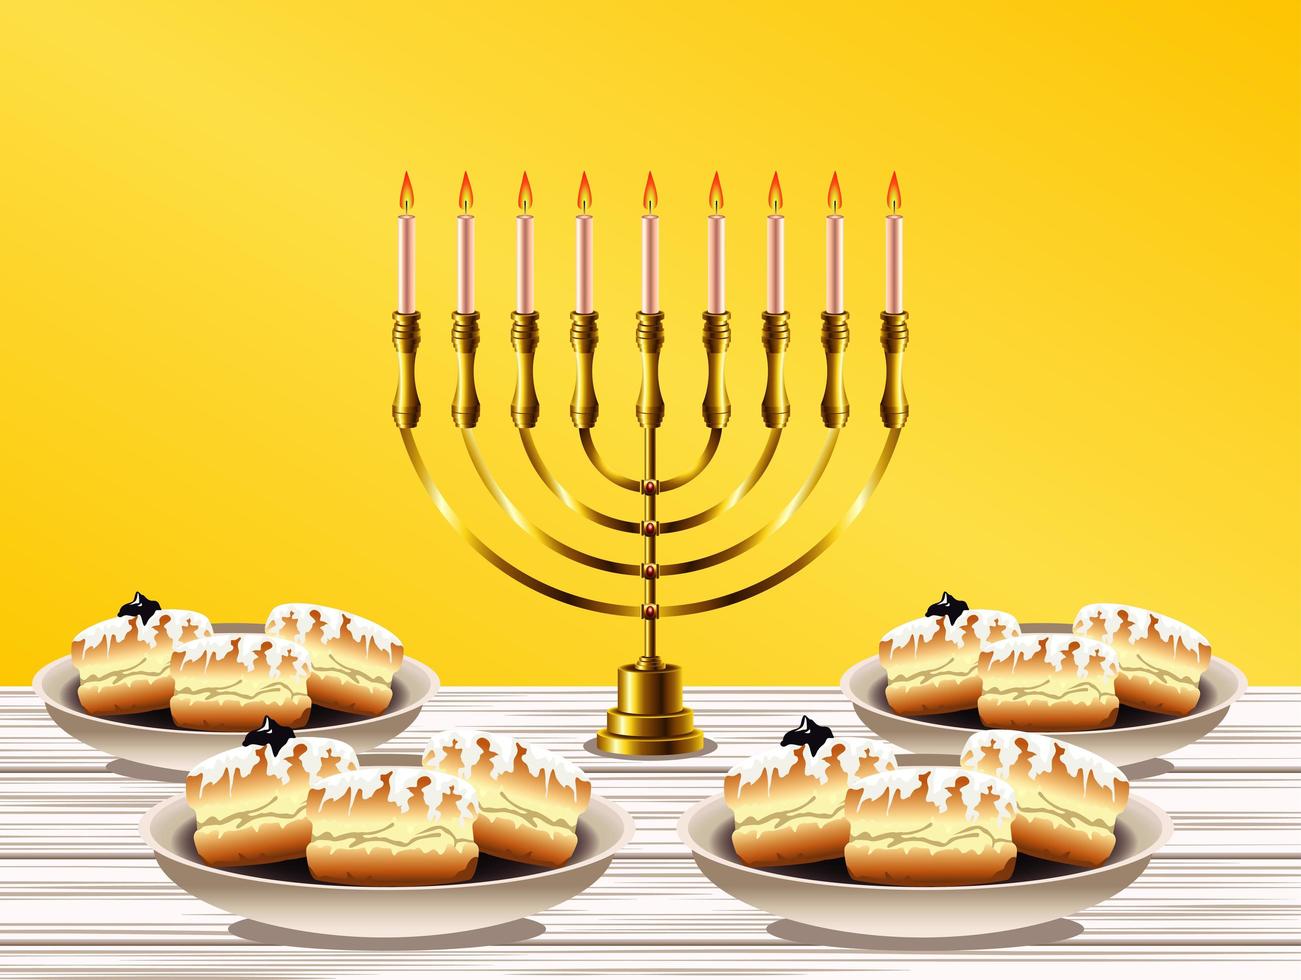 joyeuse fête de hanukkah avec lustre doré et beignets sucrés vecteur